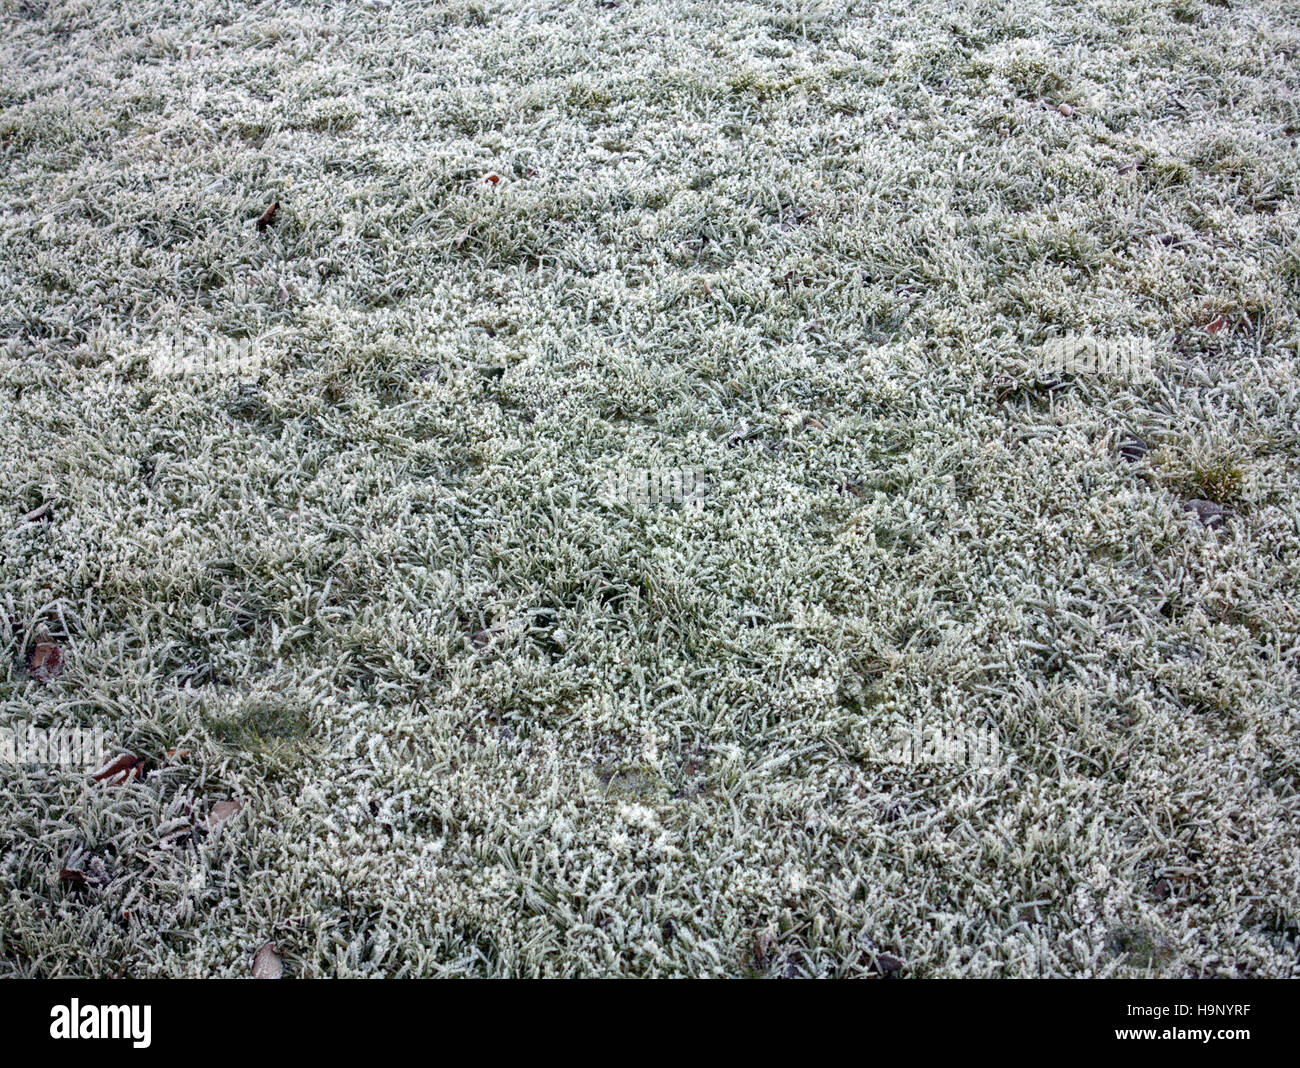 Fond de fleurs sauvages écossais prairie de graminées et mauvaises herbes glace neige noël blanc Banque D'Images